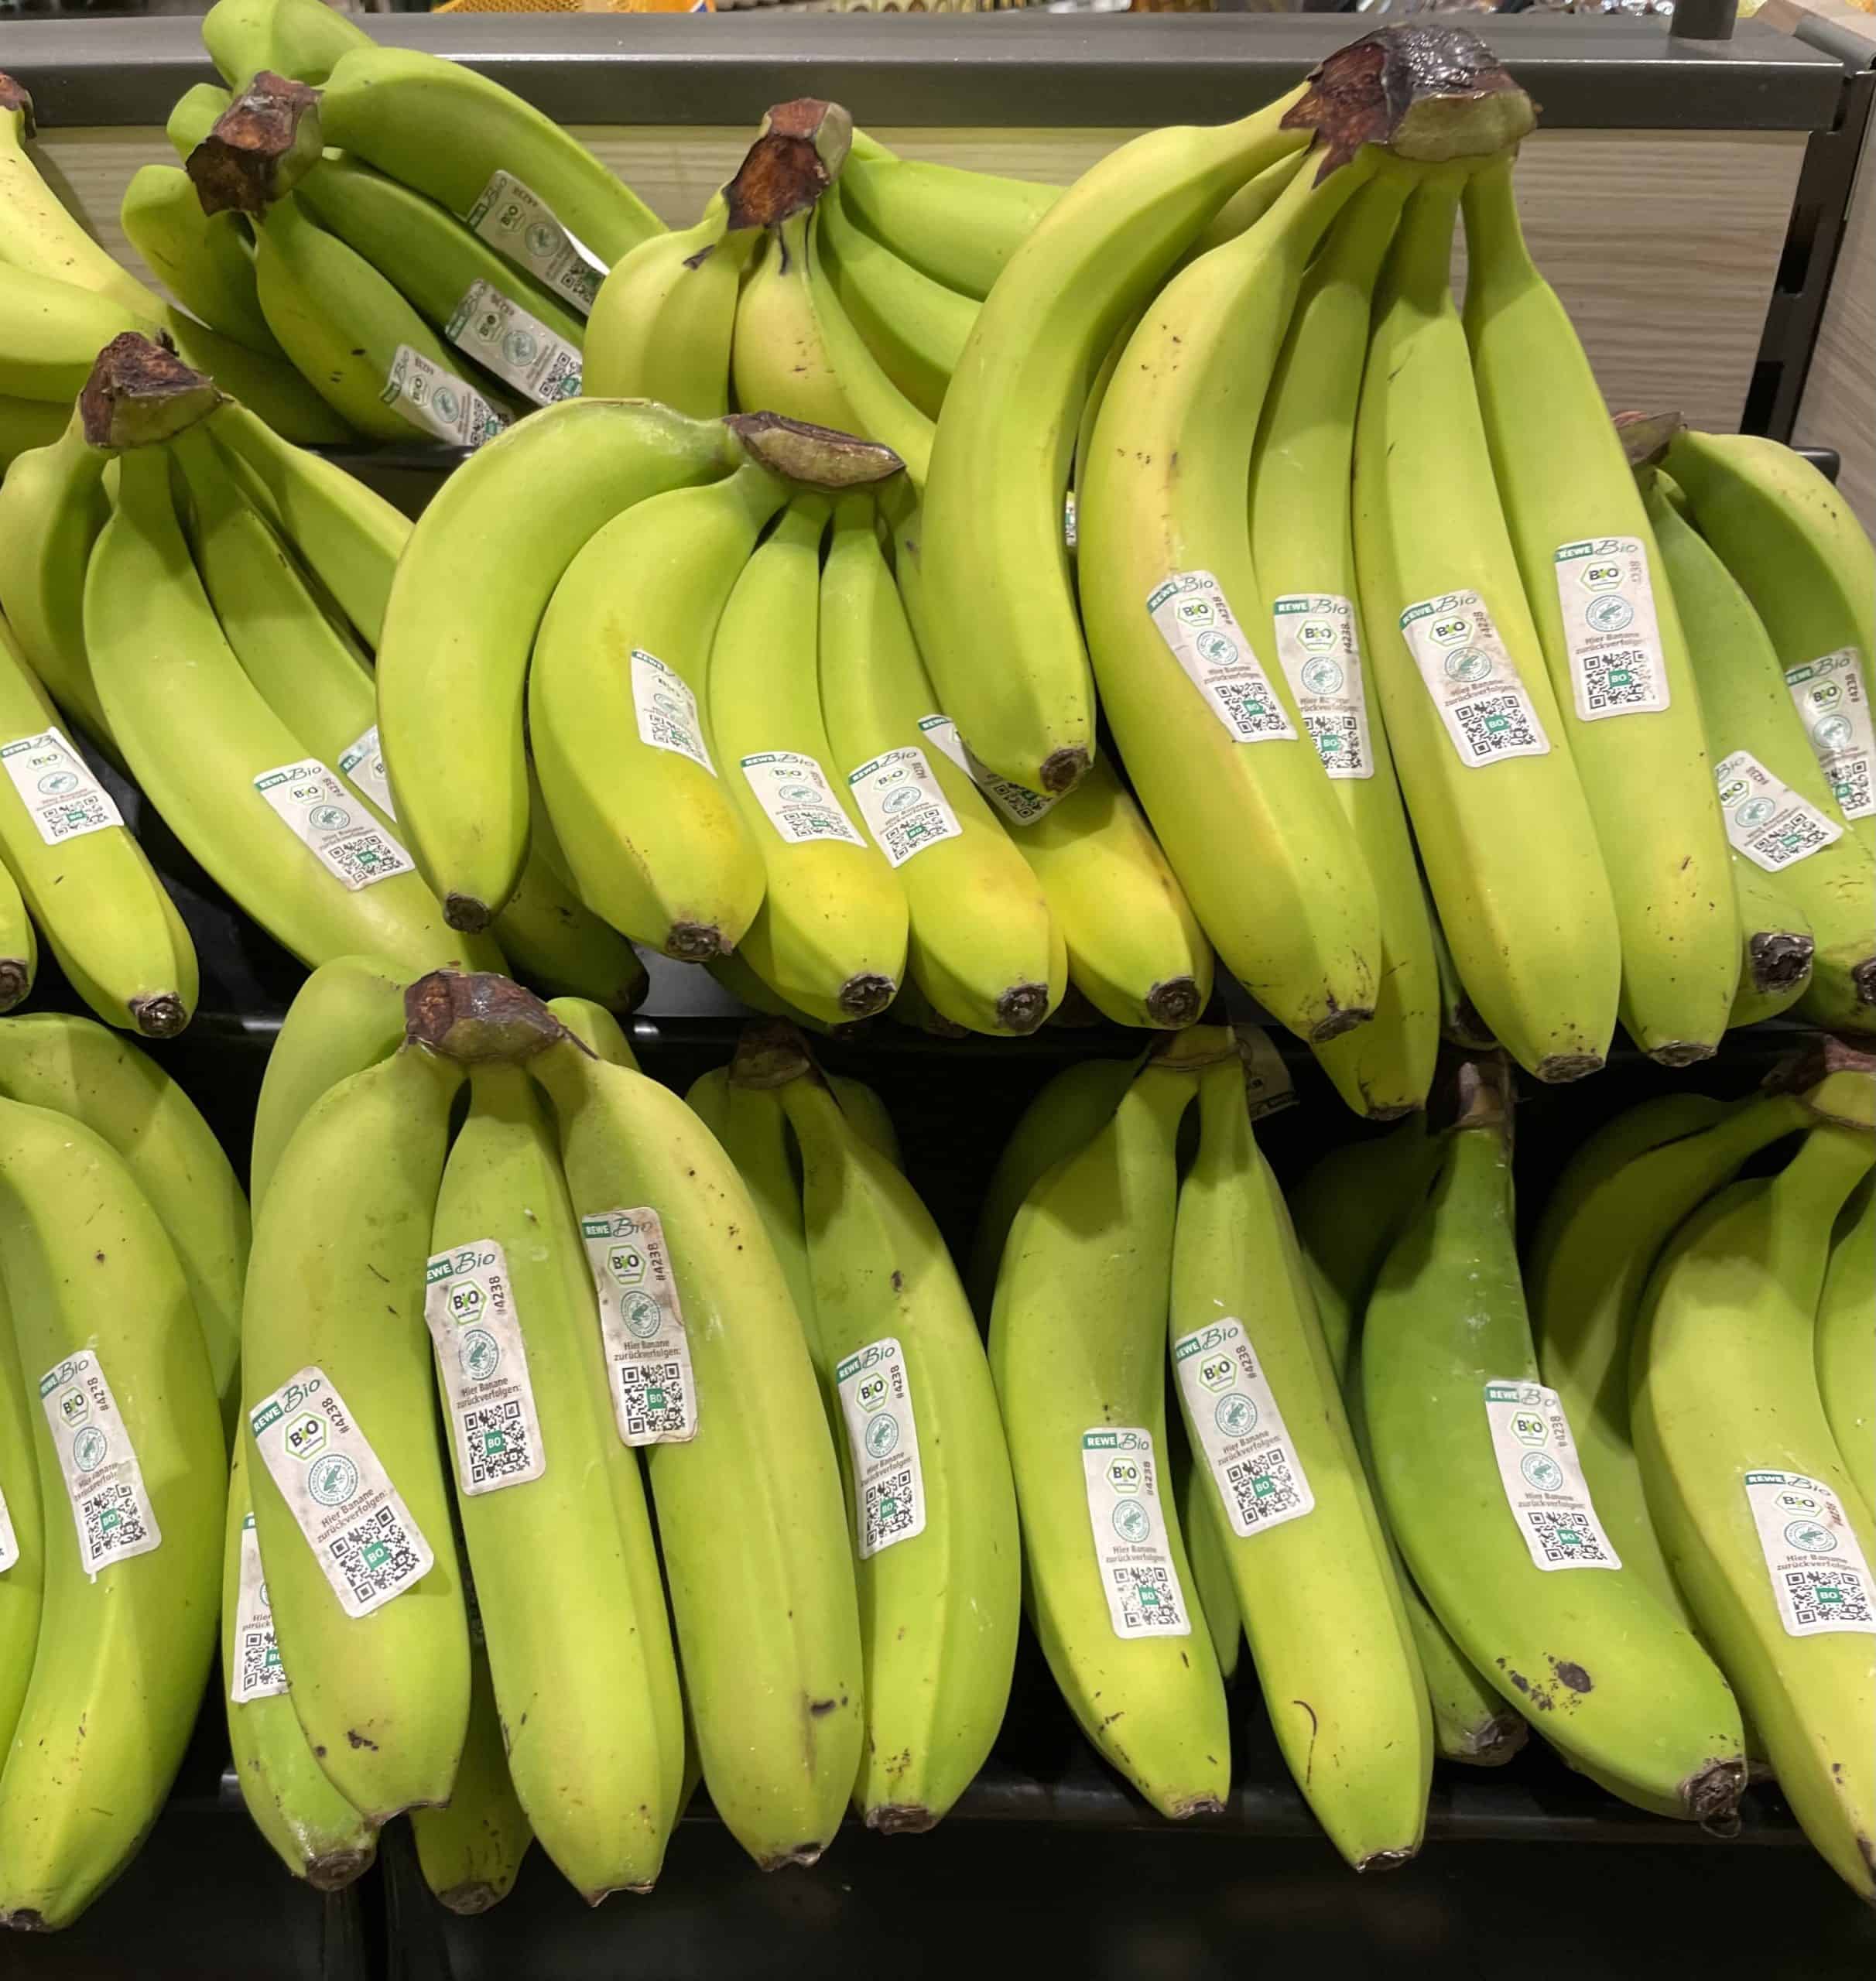 andere grüne Bananen im Supermarkt